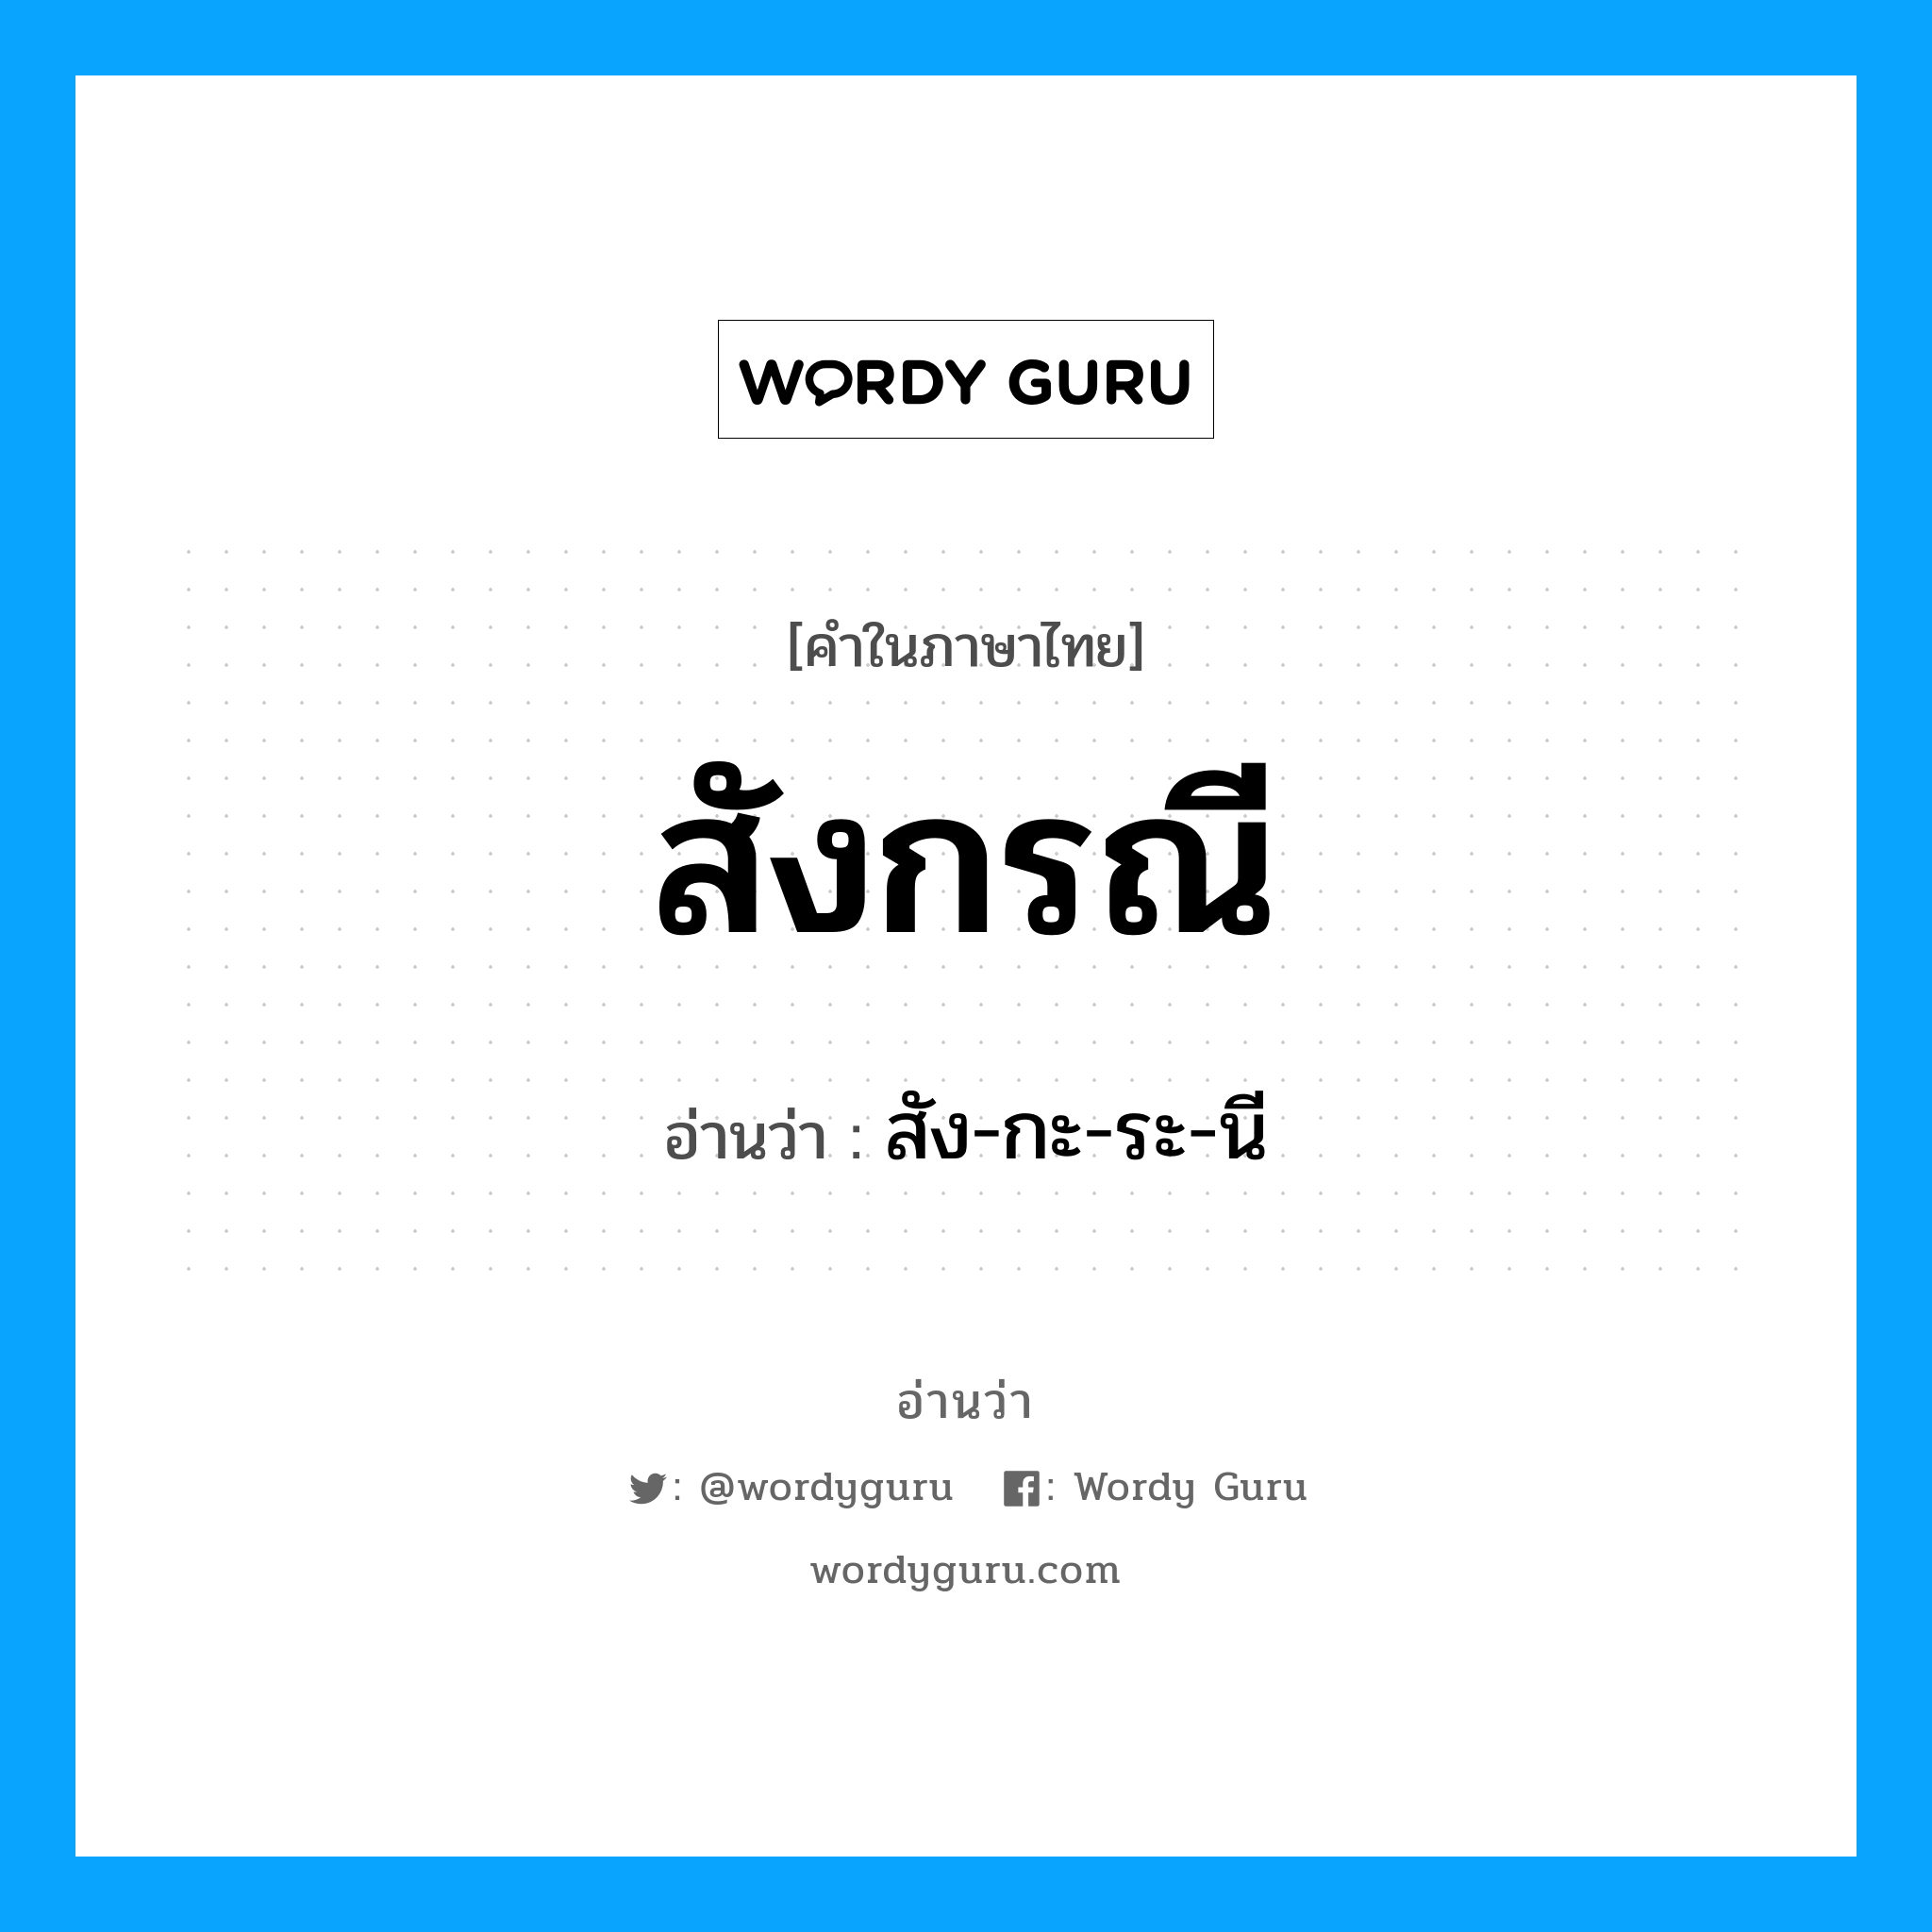 สัง-กะ-ระ-นี เป็นคำอ่านของคำไหน?, คำในภาษาไทย สัง-กะ-ระ-นี อ่านว่า สังกรณี